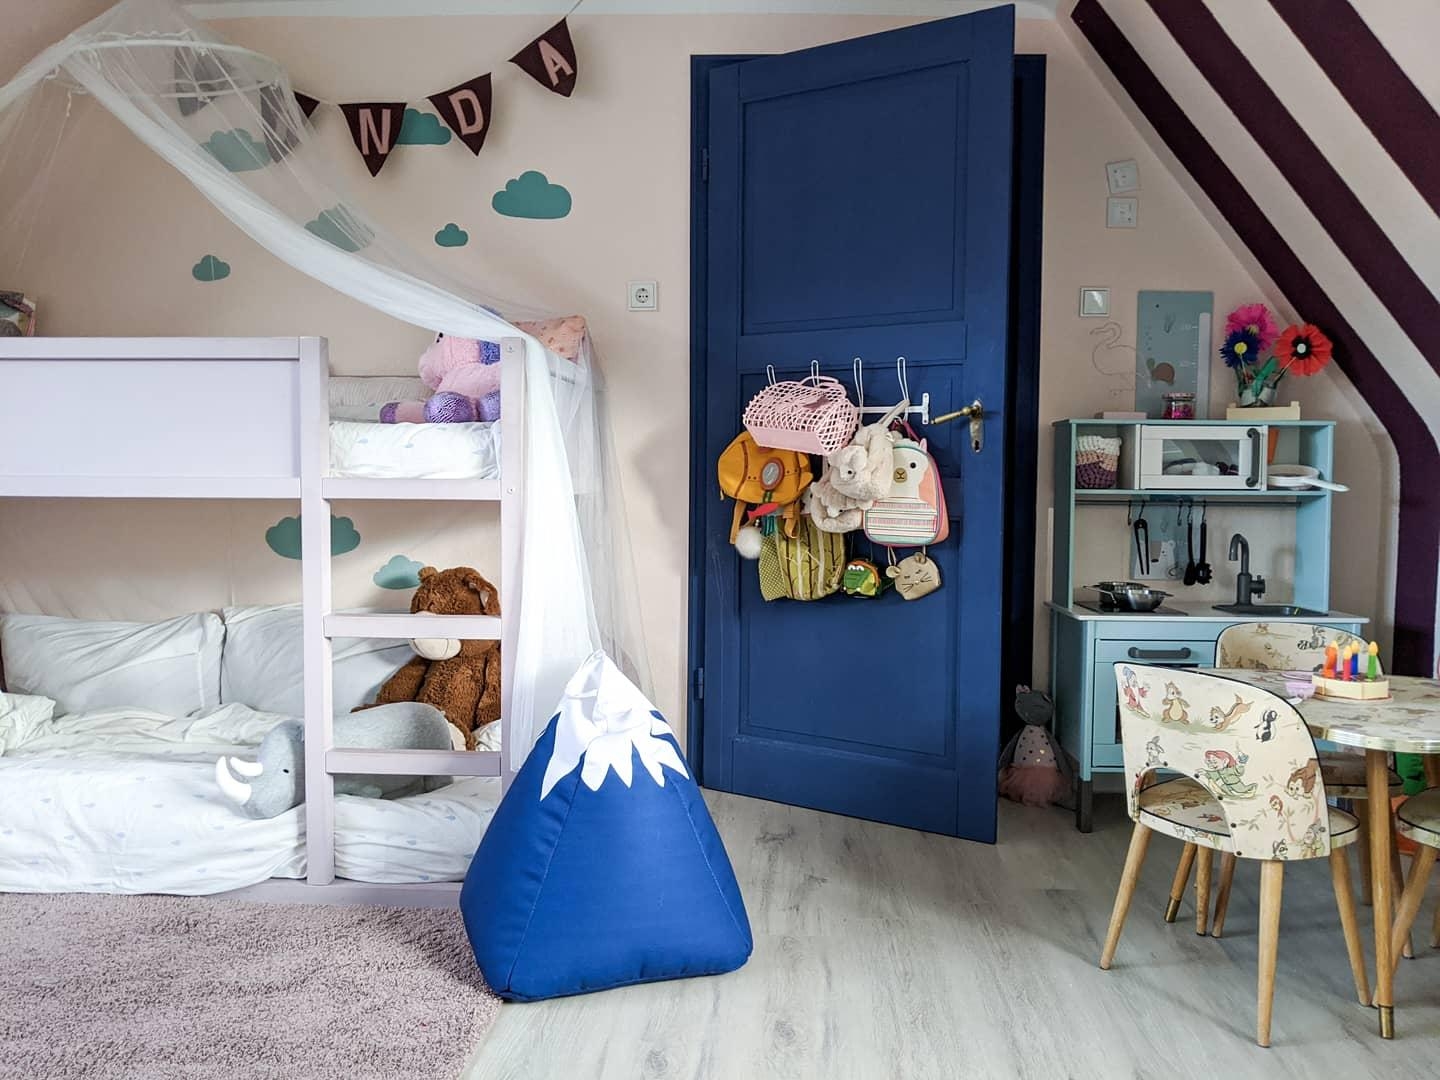 Unser Kinderzimmer im Farbrausch
#kidsroom 
#blauetür 
#kinderzimmer 
#mädchenzimmer 
#retroliebe 